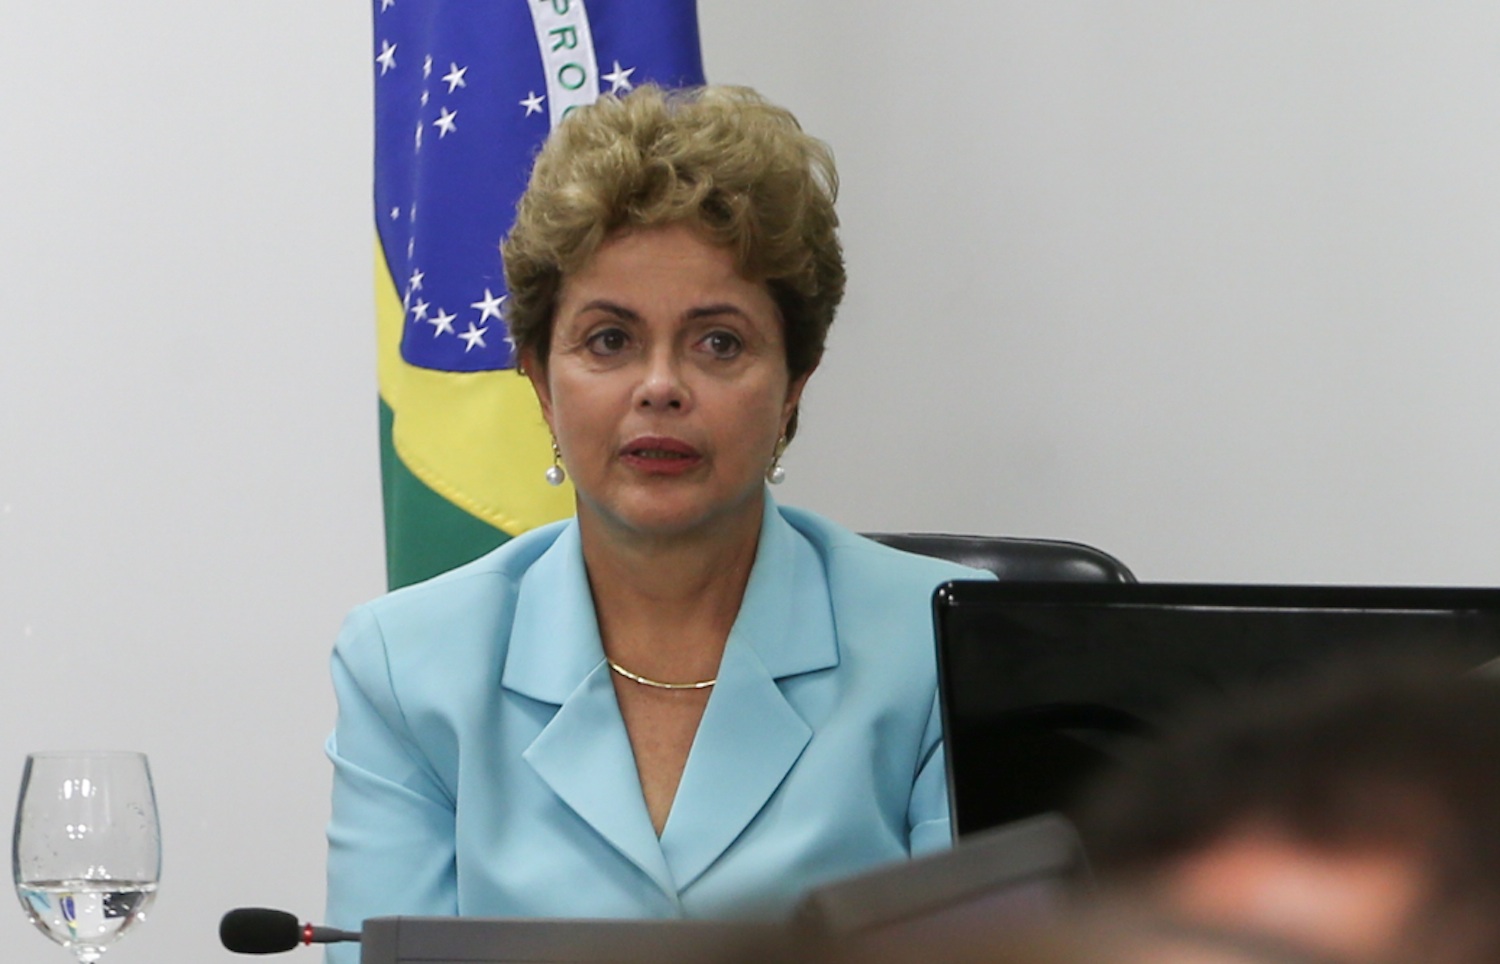 Reprovação ao governo de Dilma cresceu, diz Datafolha